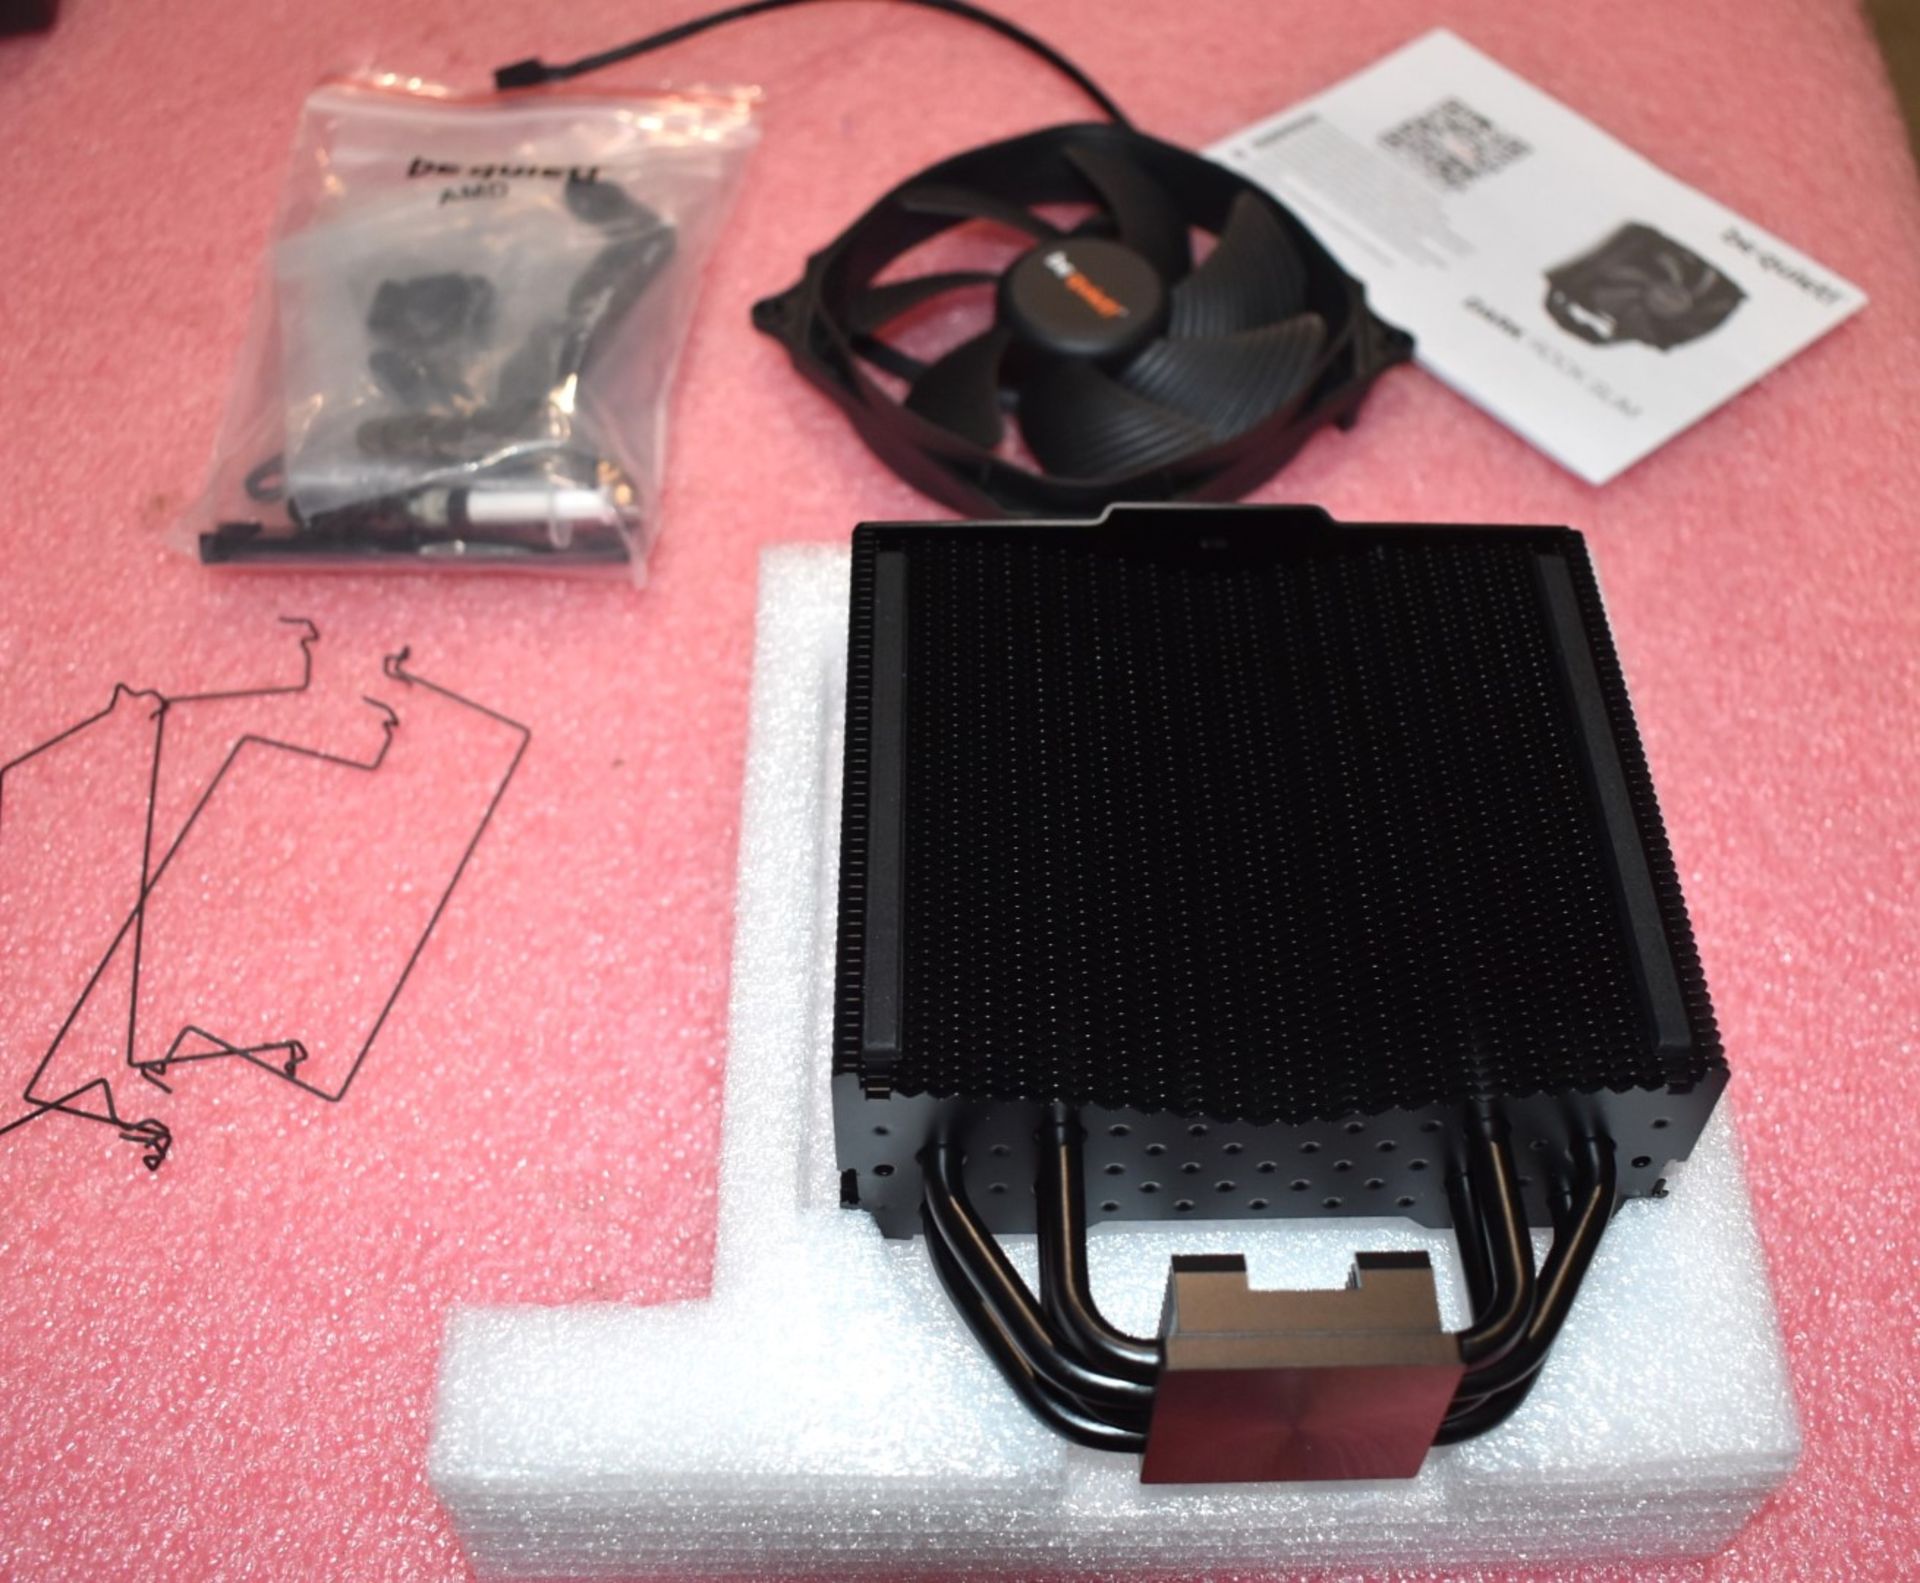 1 x BeQuiet Dark Rock Slim CPU Cooler With 120mm Fan - Image 2 of 8